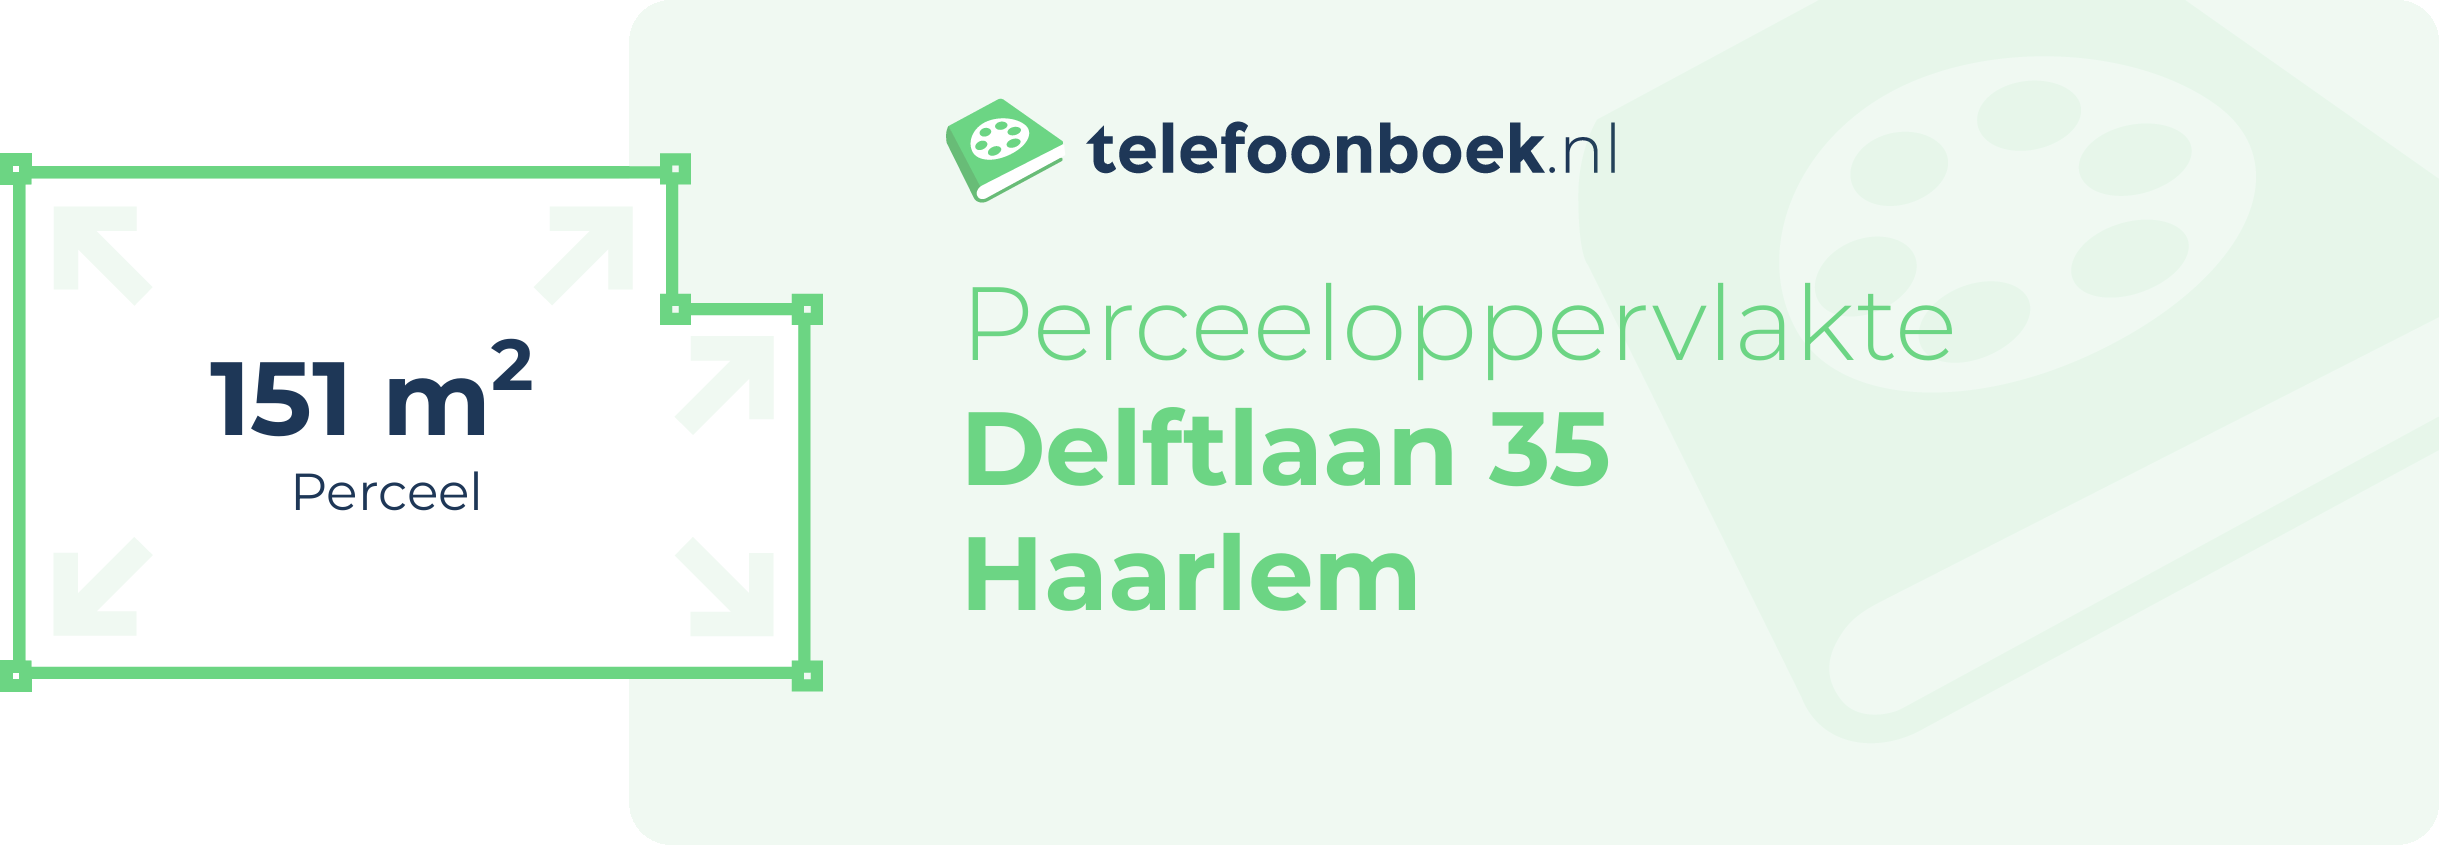 Perceeloppervlakte Delftlaan 35 Haarlem